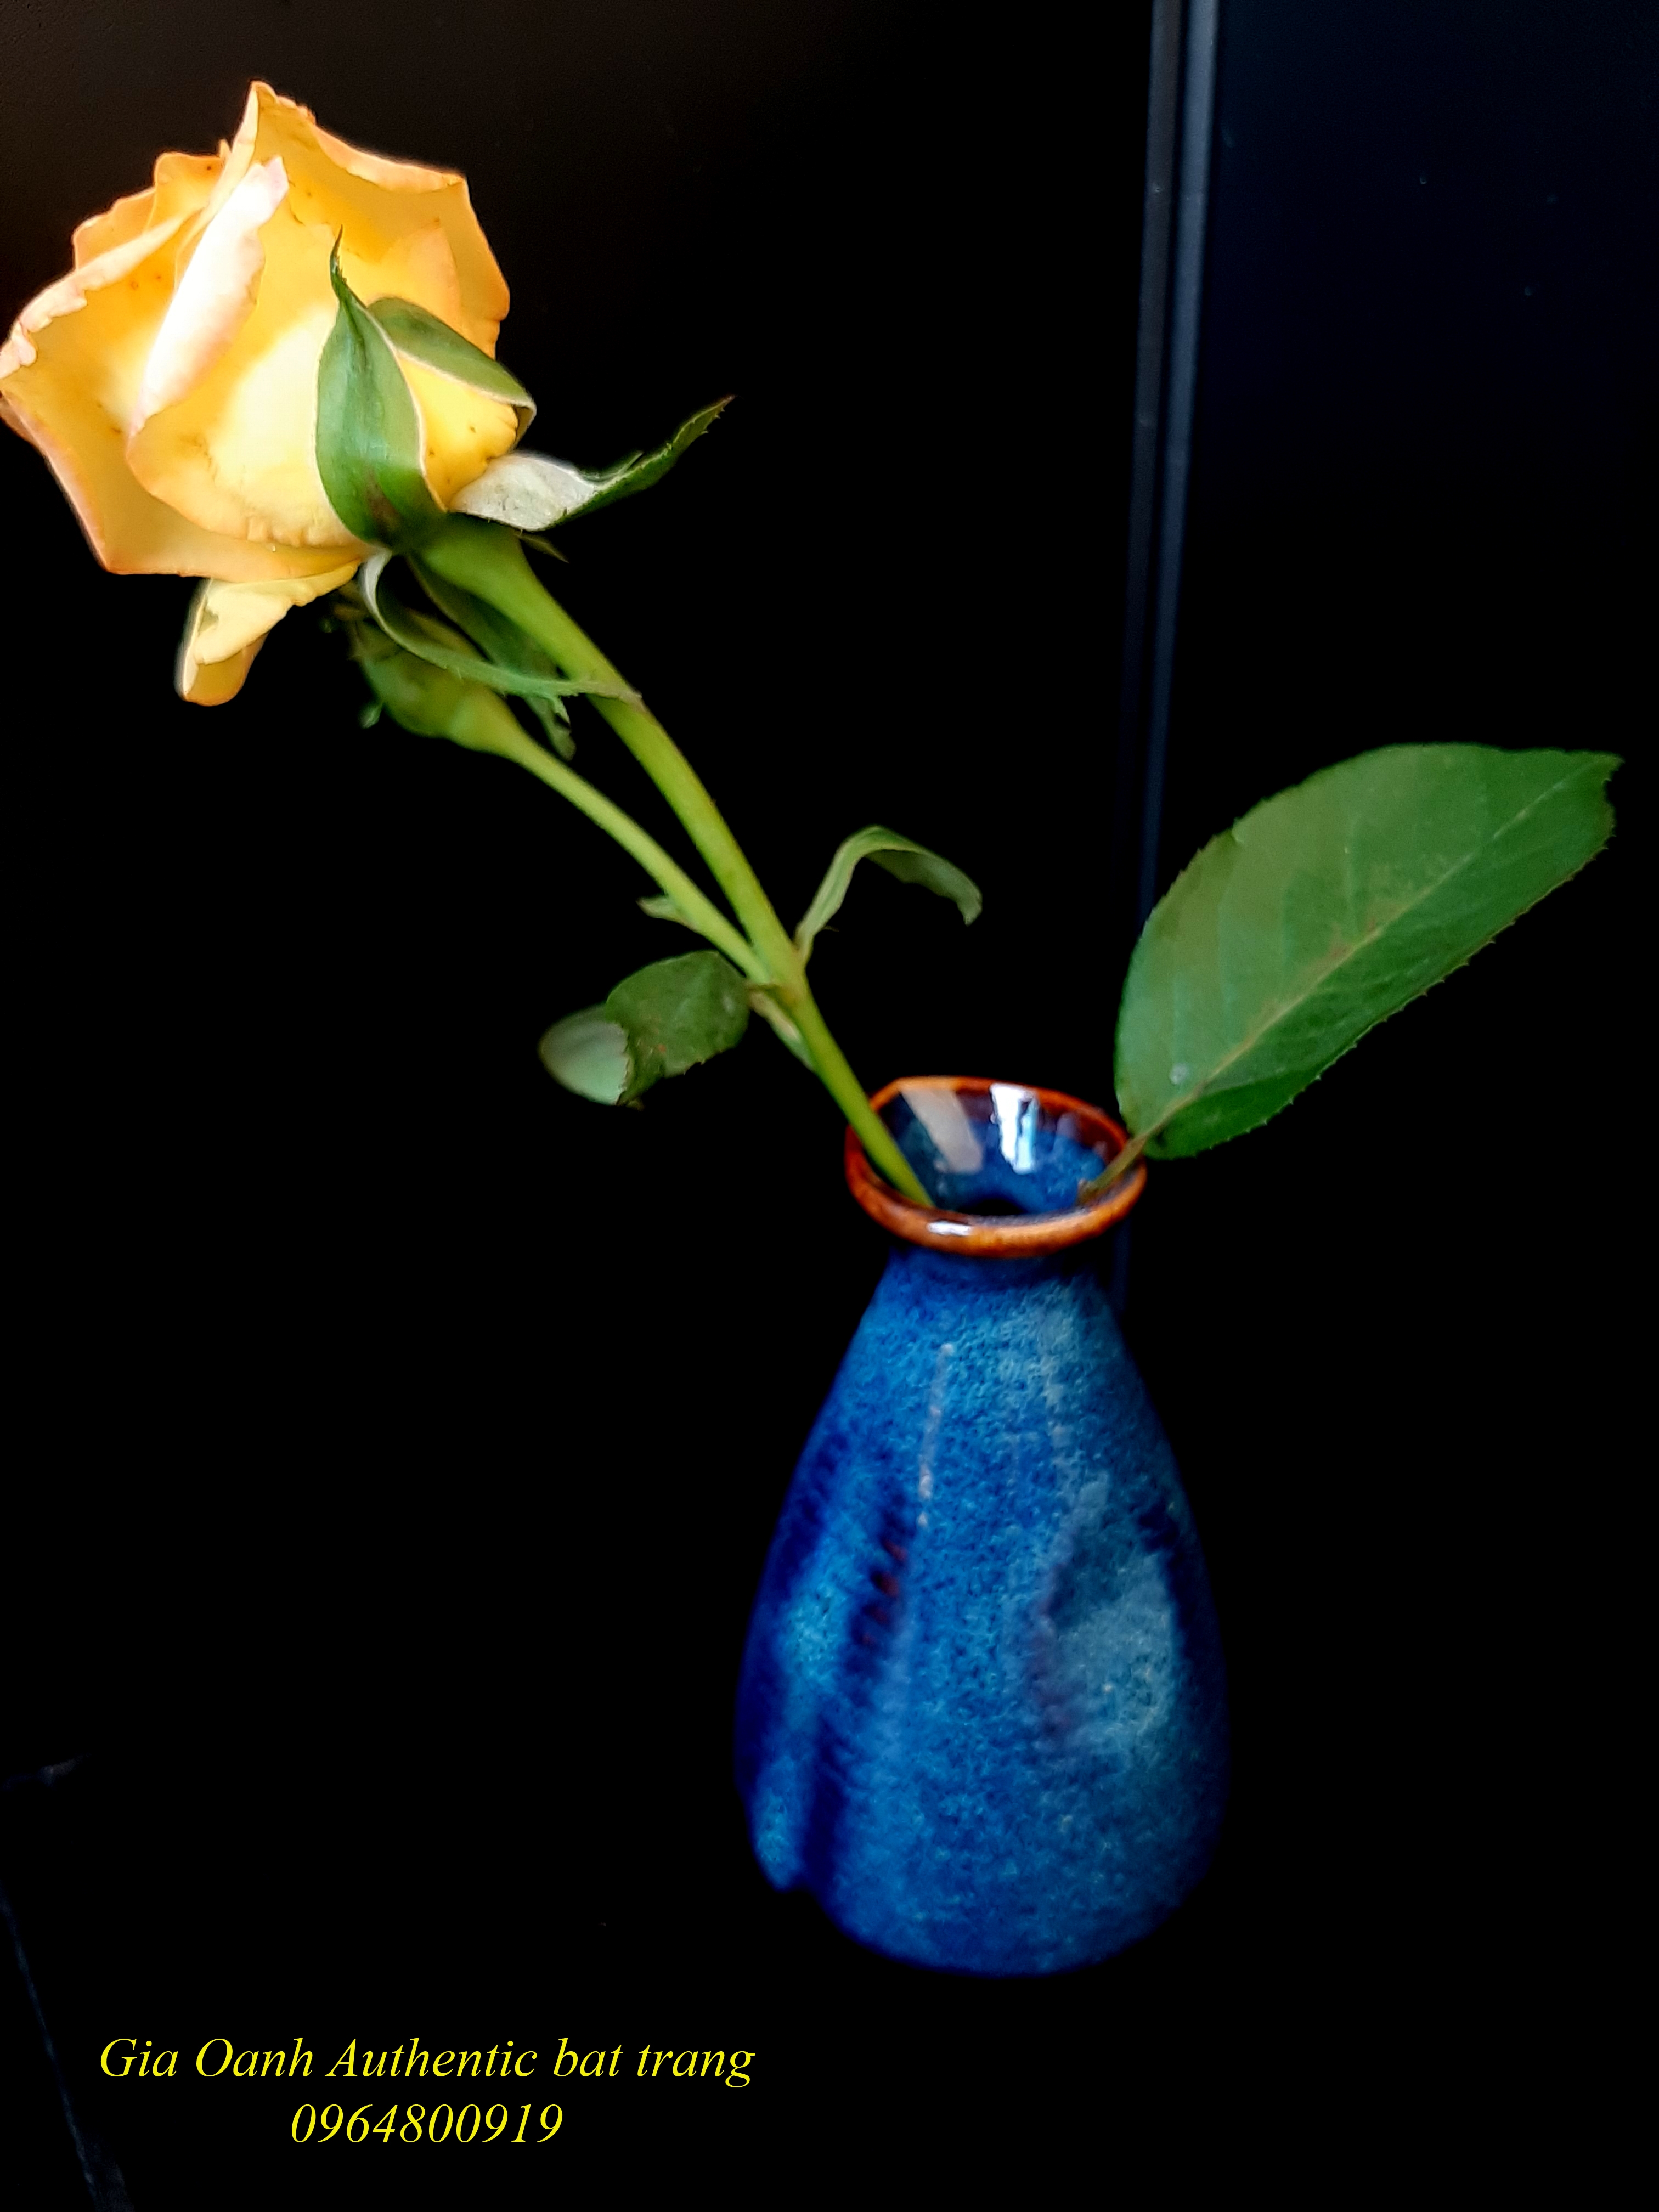 Blue Mini vase/ bình cắm hoa mini bóp miệng, men xanh hỏa biến sản xuất tại xưởng gốm sứ gia oanh authentic bat trang